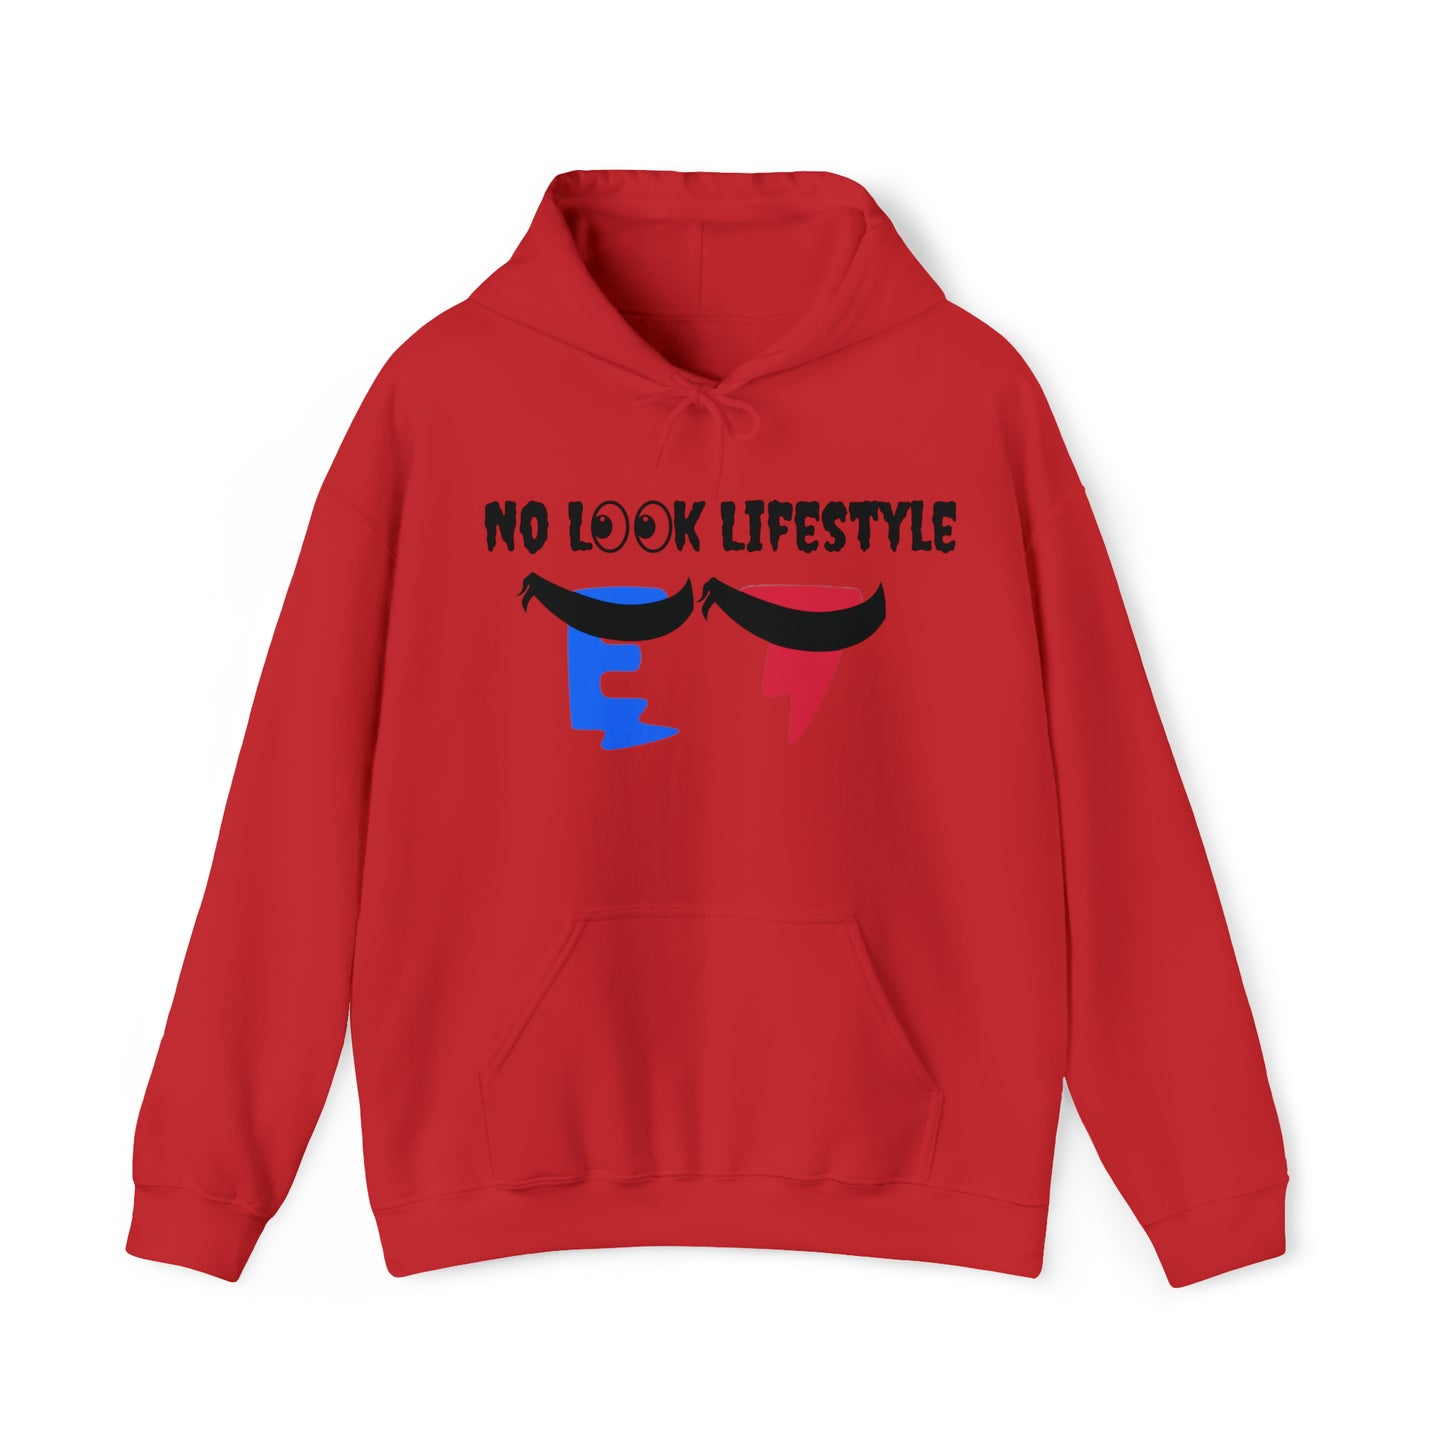 No Look Lifestyle Hooded Sweatshirt